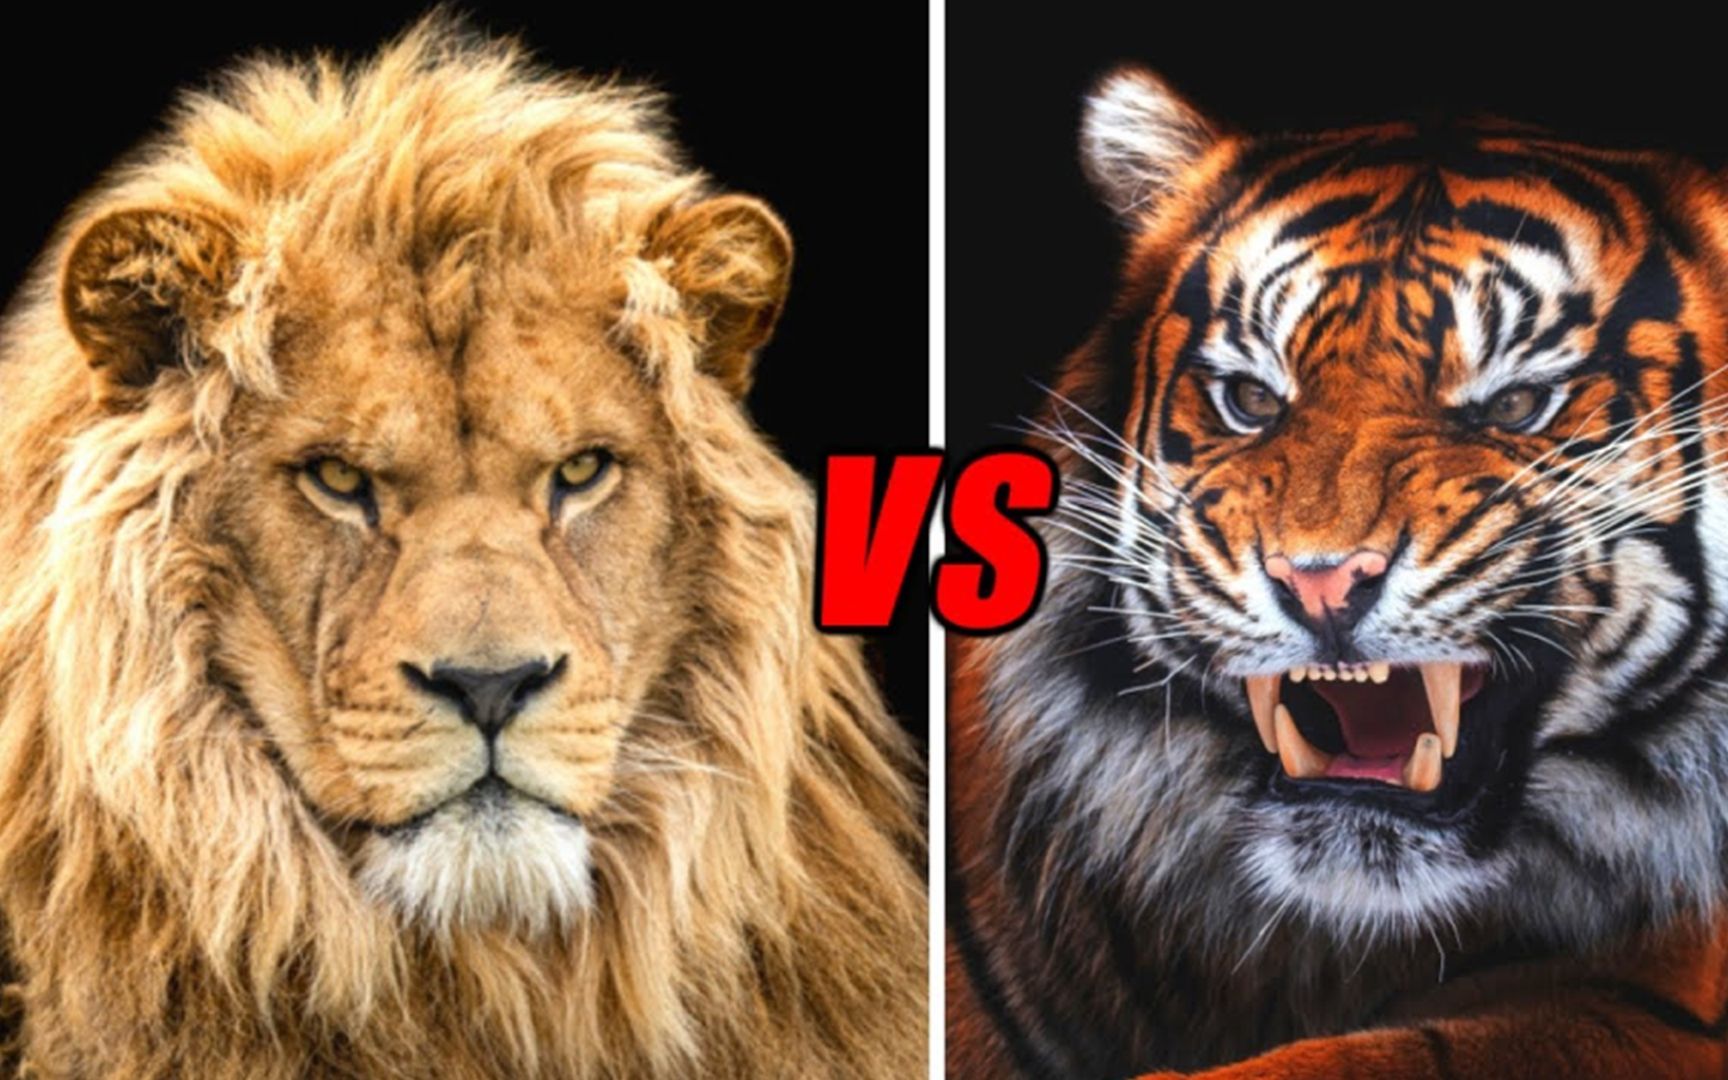 东北虎与狮子体型对比图片